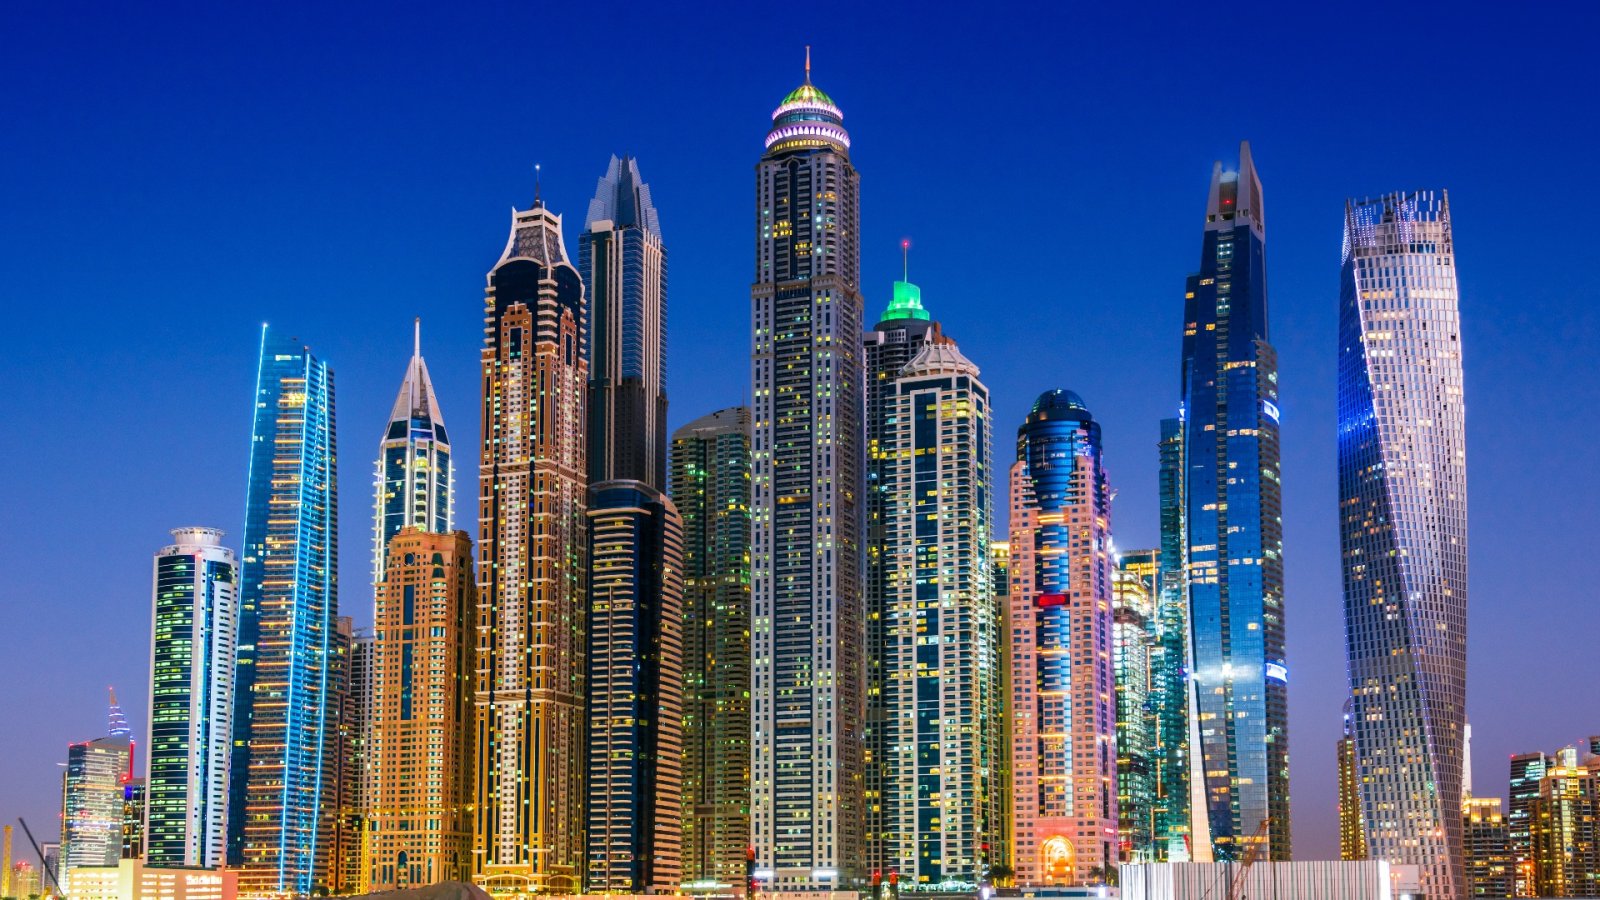 Anul Nou, case noi de lux: rezidențe la prețuri ridicate în Dubai